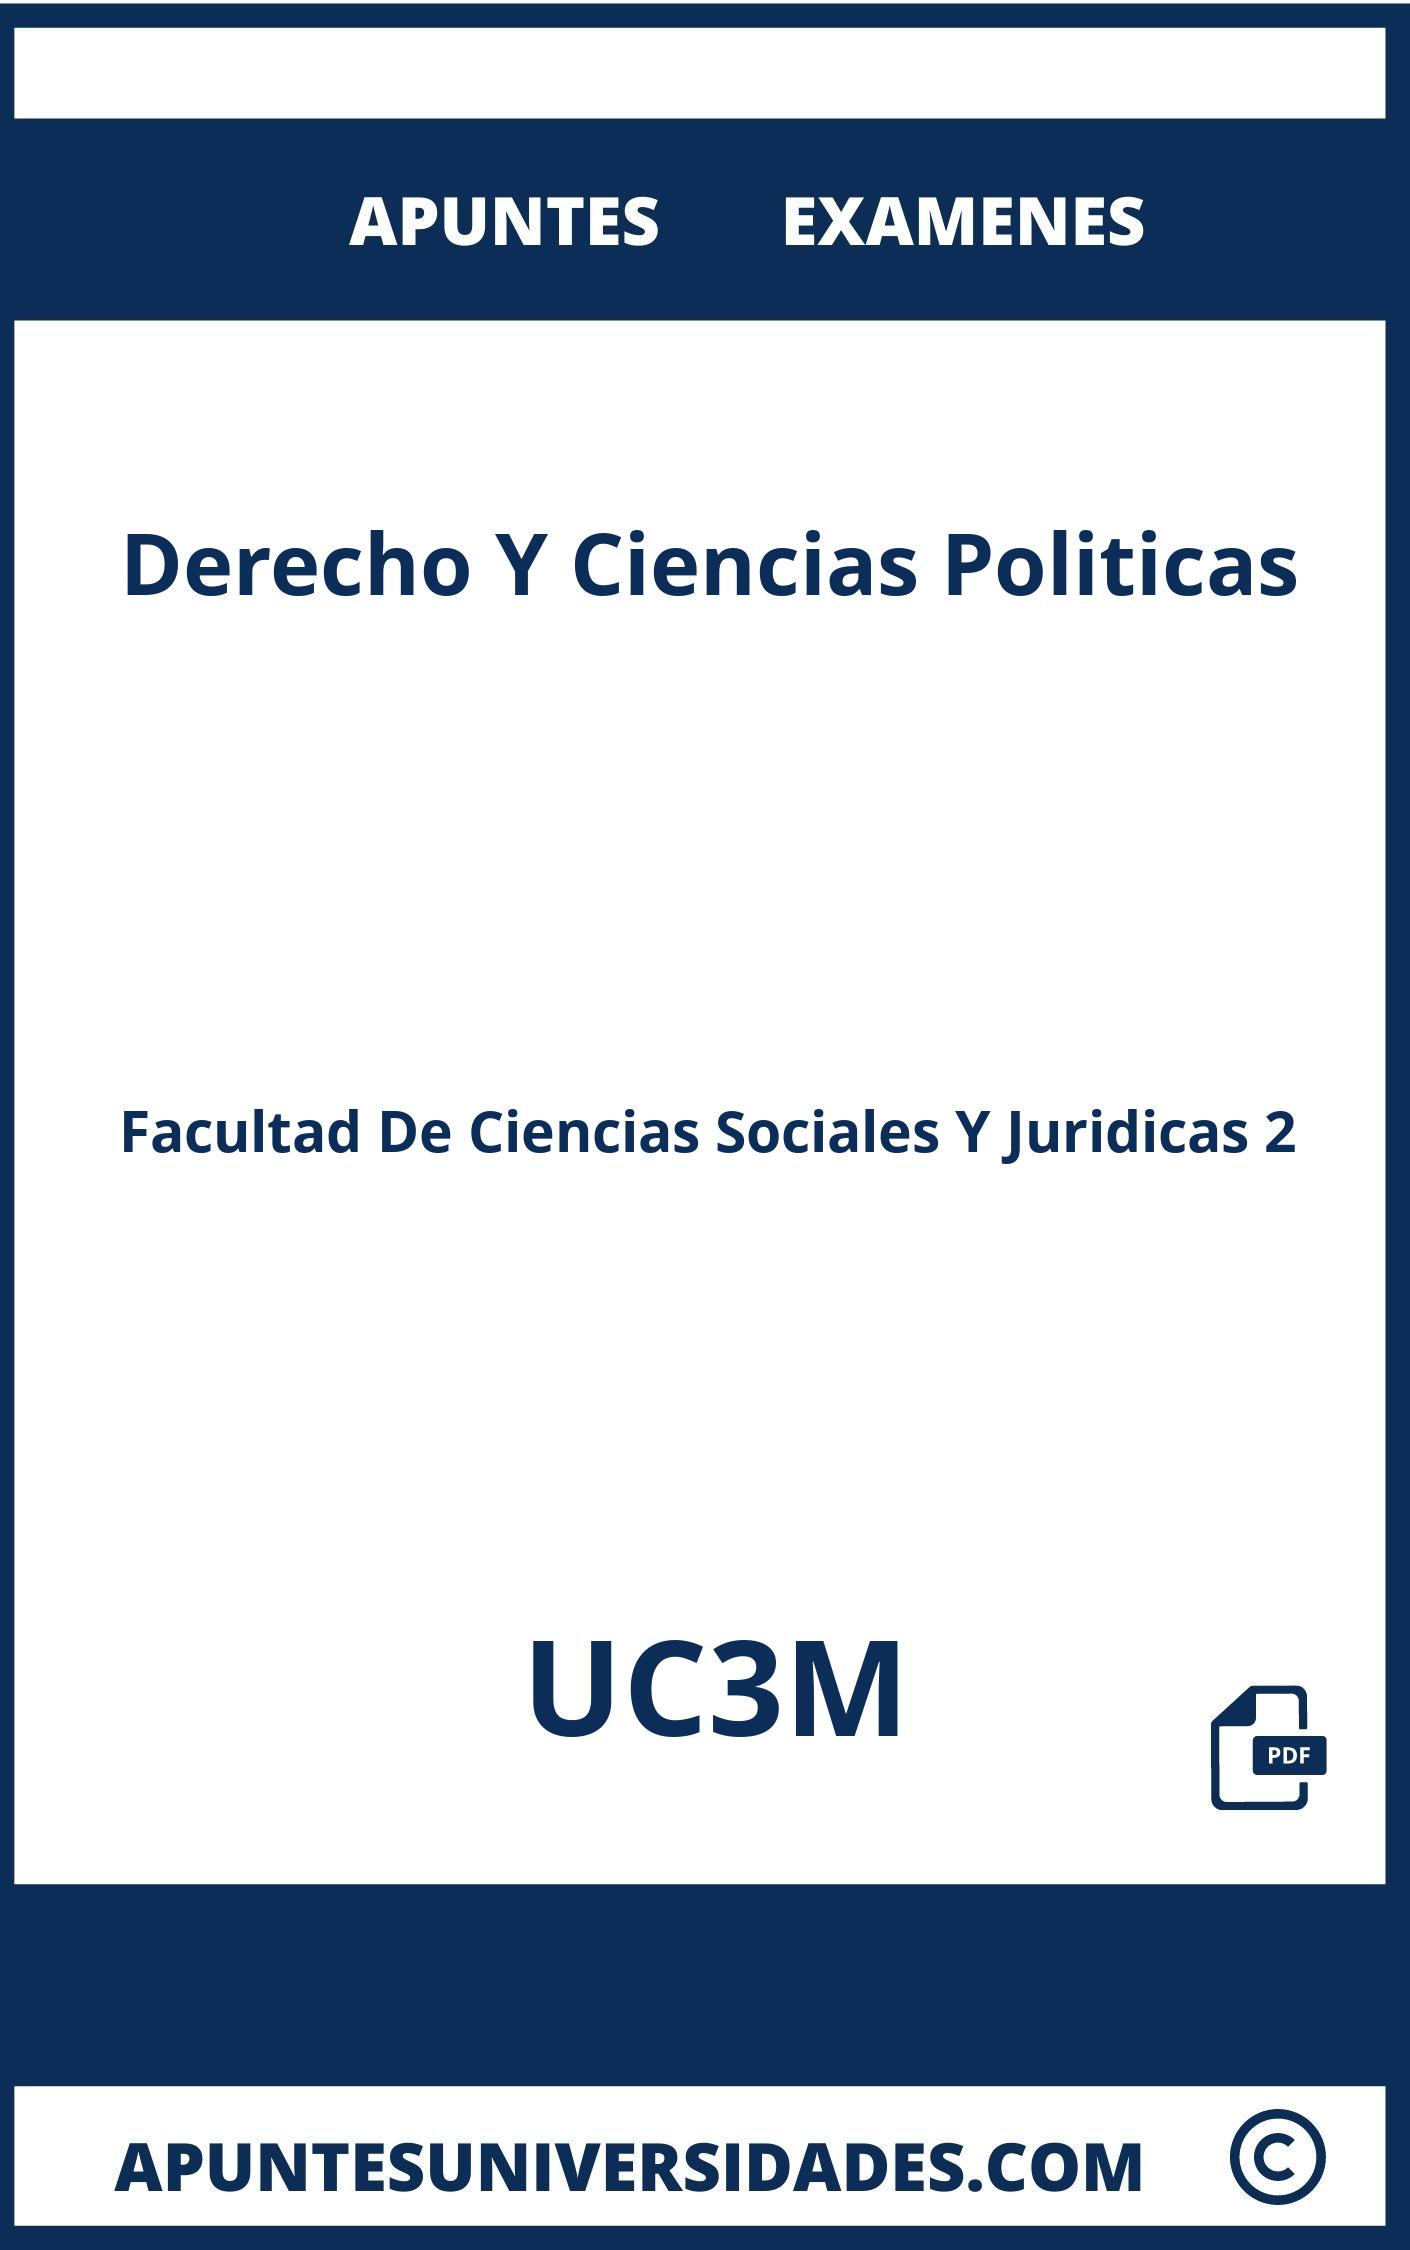 Apuntes y Examenes Derecho Y Ciencias Politicas UC3M